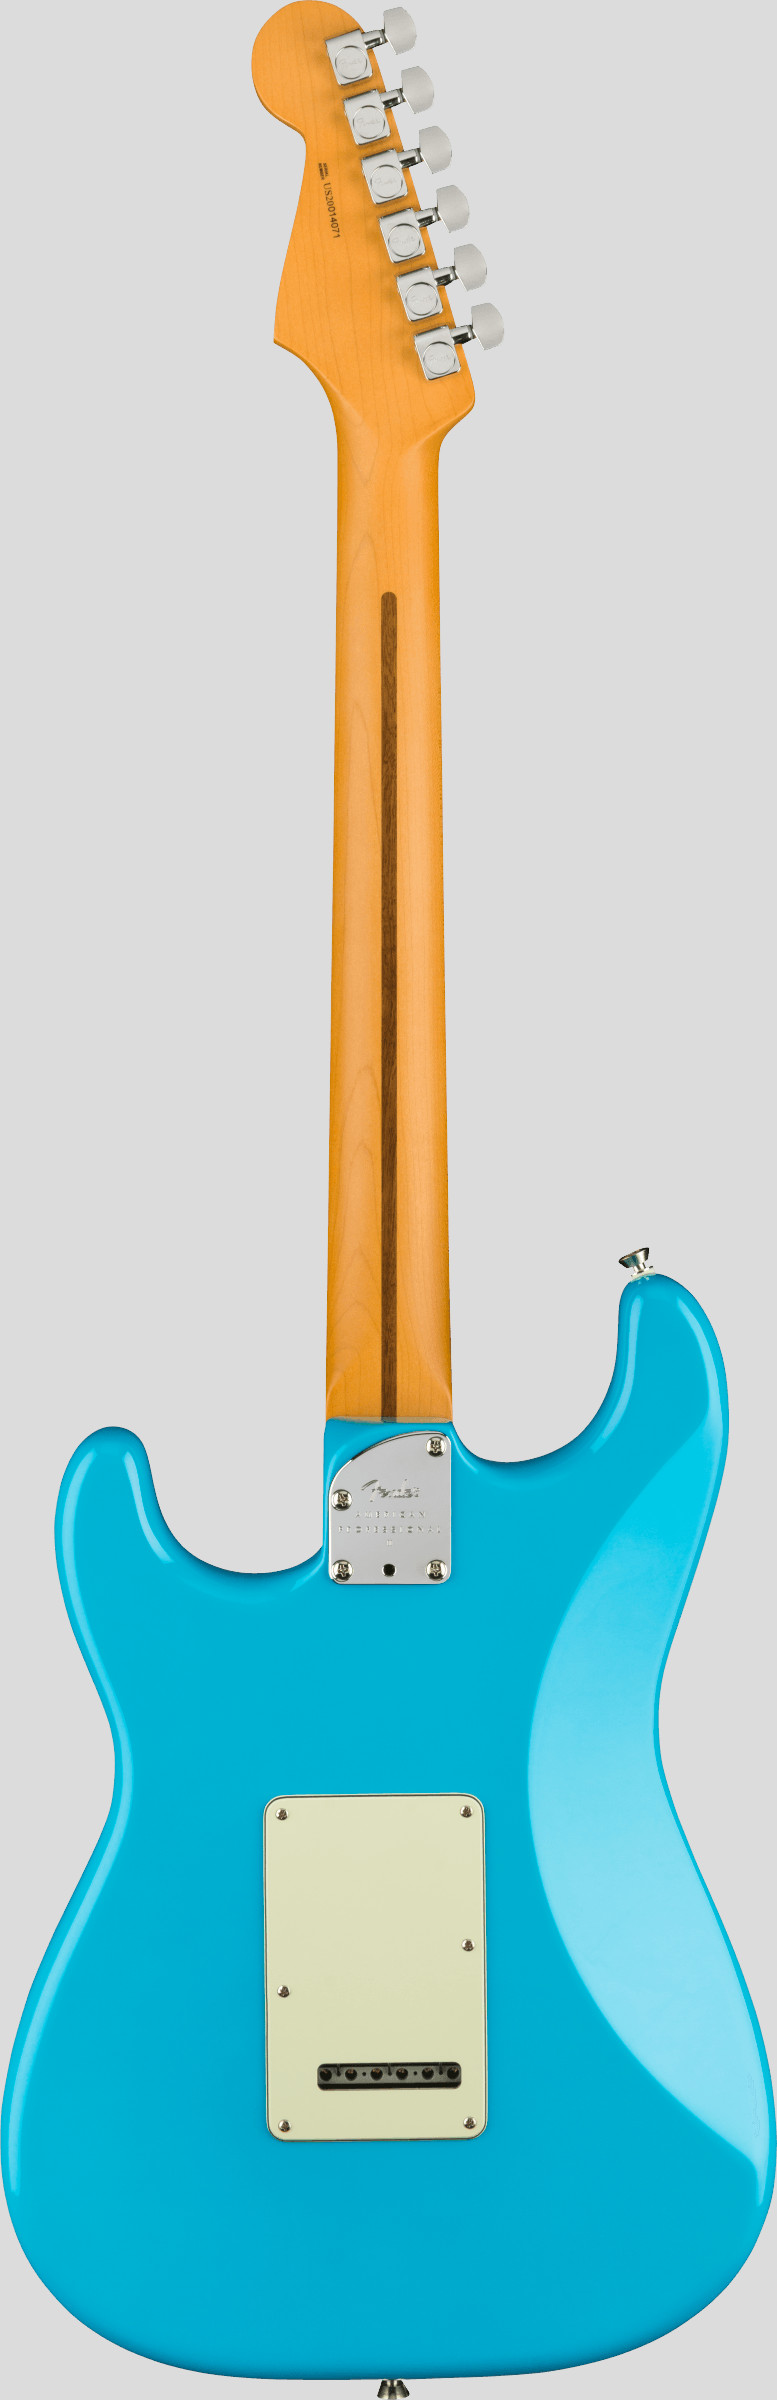 Fender American Professional II Stratocaster Miami Blue RW 2